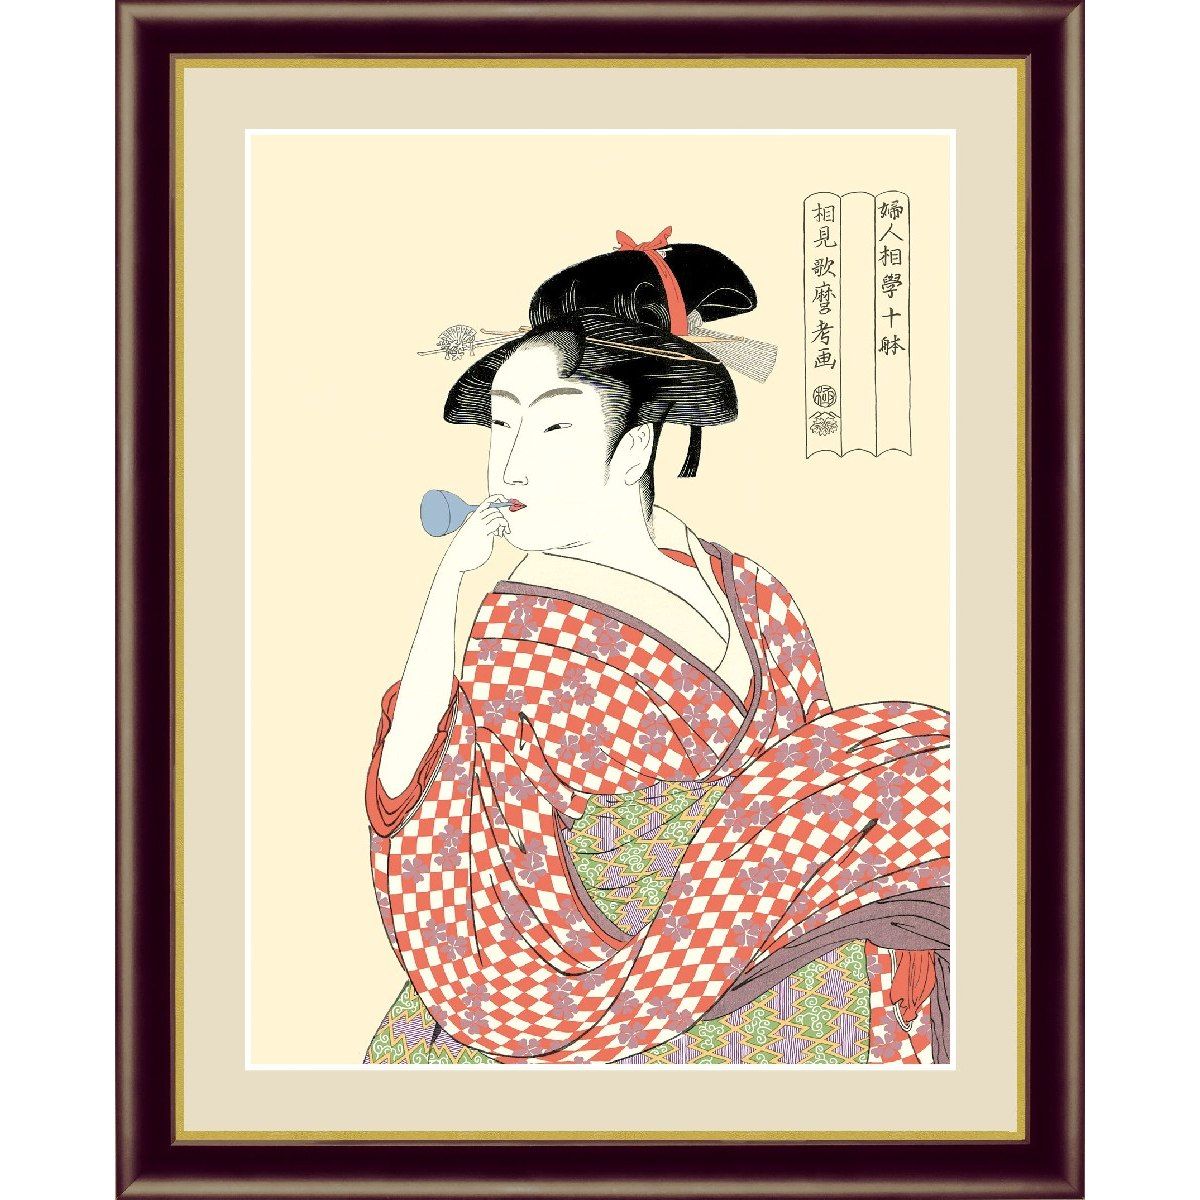 ～江戸庶民に愛された浮世絵が新しい～躍動感あふれる江戸の大衆文化が生み出した浮世絵は日本画世界に誇る芸術品で、その価値は高い評価を受けています。中でも北斎、歌麿、写楽、広重などは特に異色を放っています。生き生きとした役者絵の表情と艶やかな美人画、今にも動き出しそうな風景。絵師の表現力と卓越した江戸の職人の技がいかんなく発揮されています。 高精細功芸画(手彩補色) 世界の有名美術館がレプリカを制作するため採用している最先端シグレ版画技法で 特性新絹本画布に表現し、最終仕上げは手彩による補色が加えられ、 リアル感を醸し出しています。 空気中の光やオゾンなどに分解されにくい耐候性を備えており、 時間がたっても色調が変化しにくく、美しさが変わりません。 ■サイズ：42×34cm ■作家名：喜多川歌麿 ■作家略歴：北斎、広重、写楽と並び、世界的に知られている浮世絵師・歌麿の美人画を選りすぐってご紹介します。「美人画といえば歌磨」と言われるほど、女性美を追求し続け、女性をより美しく艶やかに見せる「透け感」を巧みに取り入れた美人画を数多く残しています。 ■材質本紙：新絹本 ■材質フレーム：木製 ■前面カバー：PETシート ■仕様：F4 ■納期：通常10日～2週間程度(連休や繁忙期などにはもう少しお時間をいただく場合がございます。)　 ■発送について：メーカー様の工房から直接発送 ■特記事項：●こちらの商品は、梱包に万全を期すためメーカー様の工房から直接のお届けとなります。●ラッピング・のし・代金引換便・他の商品との同梱には対応しておりません。●ご注文後に制作にかかりますため、その性質上、ご注文後の内容変更・キャンセルや返品はお受けいたしかねますのでご了承ください。